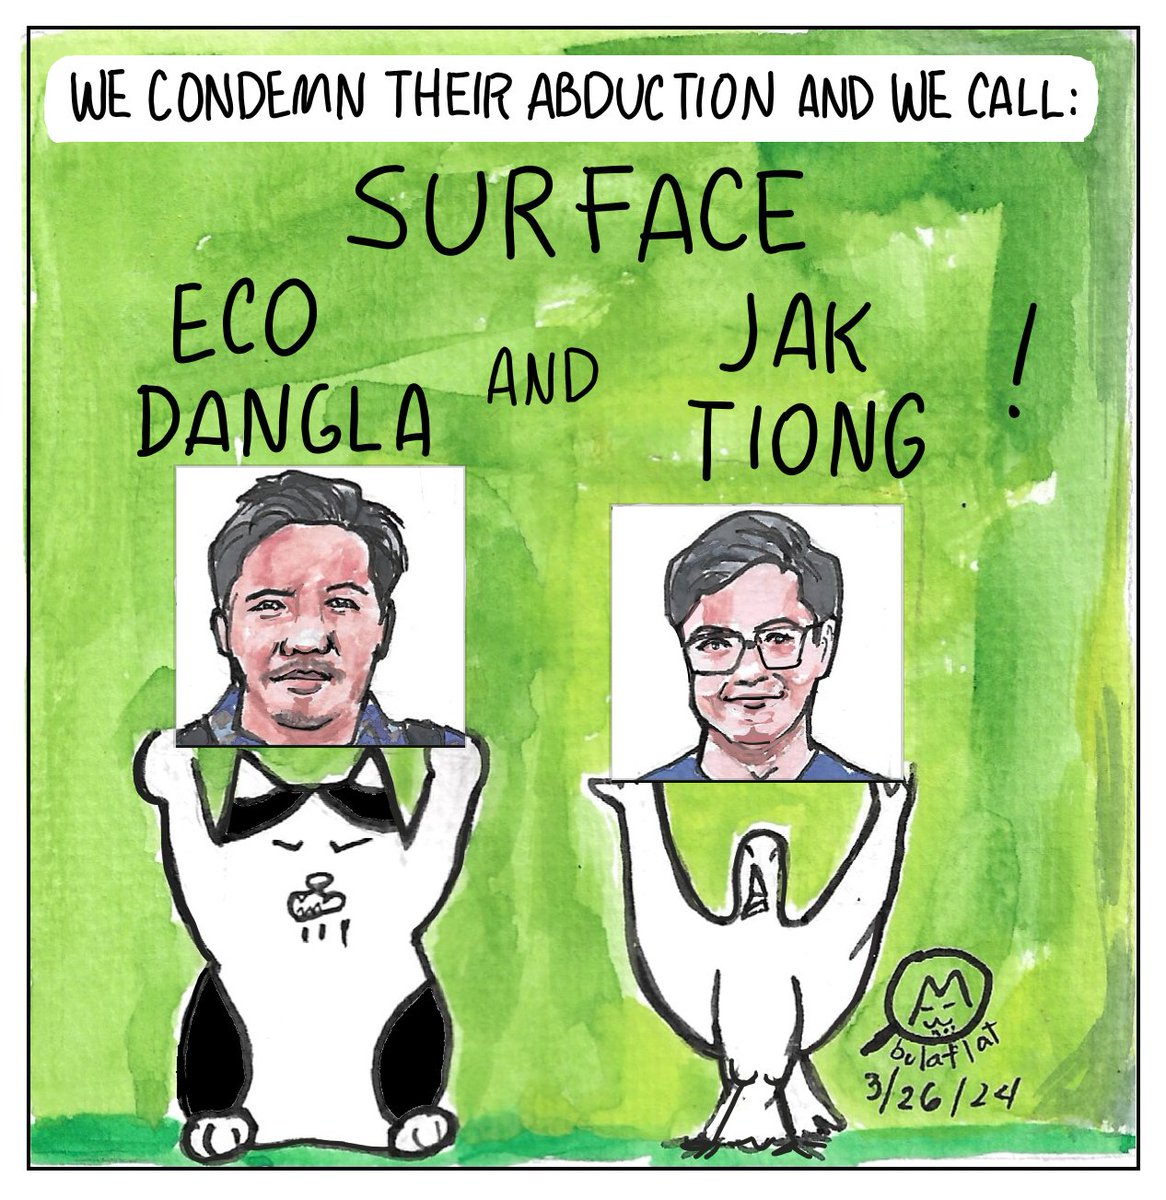 Kinokondena namin ang pagdukot kina Eco Dangla at Jak Tiong. Kilala namin sila bilang mabubuting climate activists at tagapagsulong ng karapatan ng mga komunidad. Palakasin natin ang panawagan na ilitaw sila #SurfaceJakAndEco !